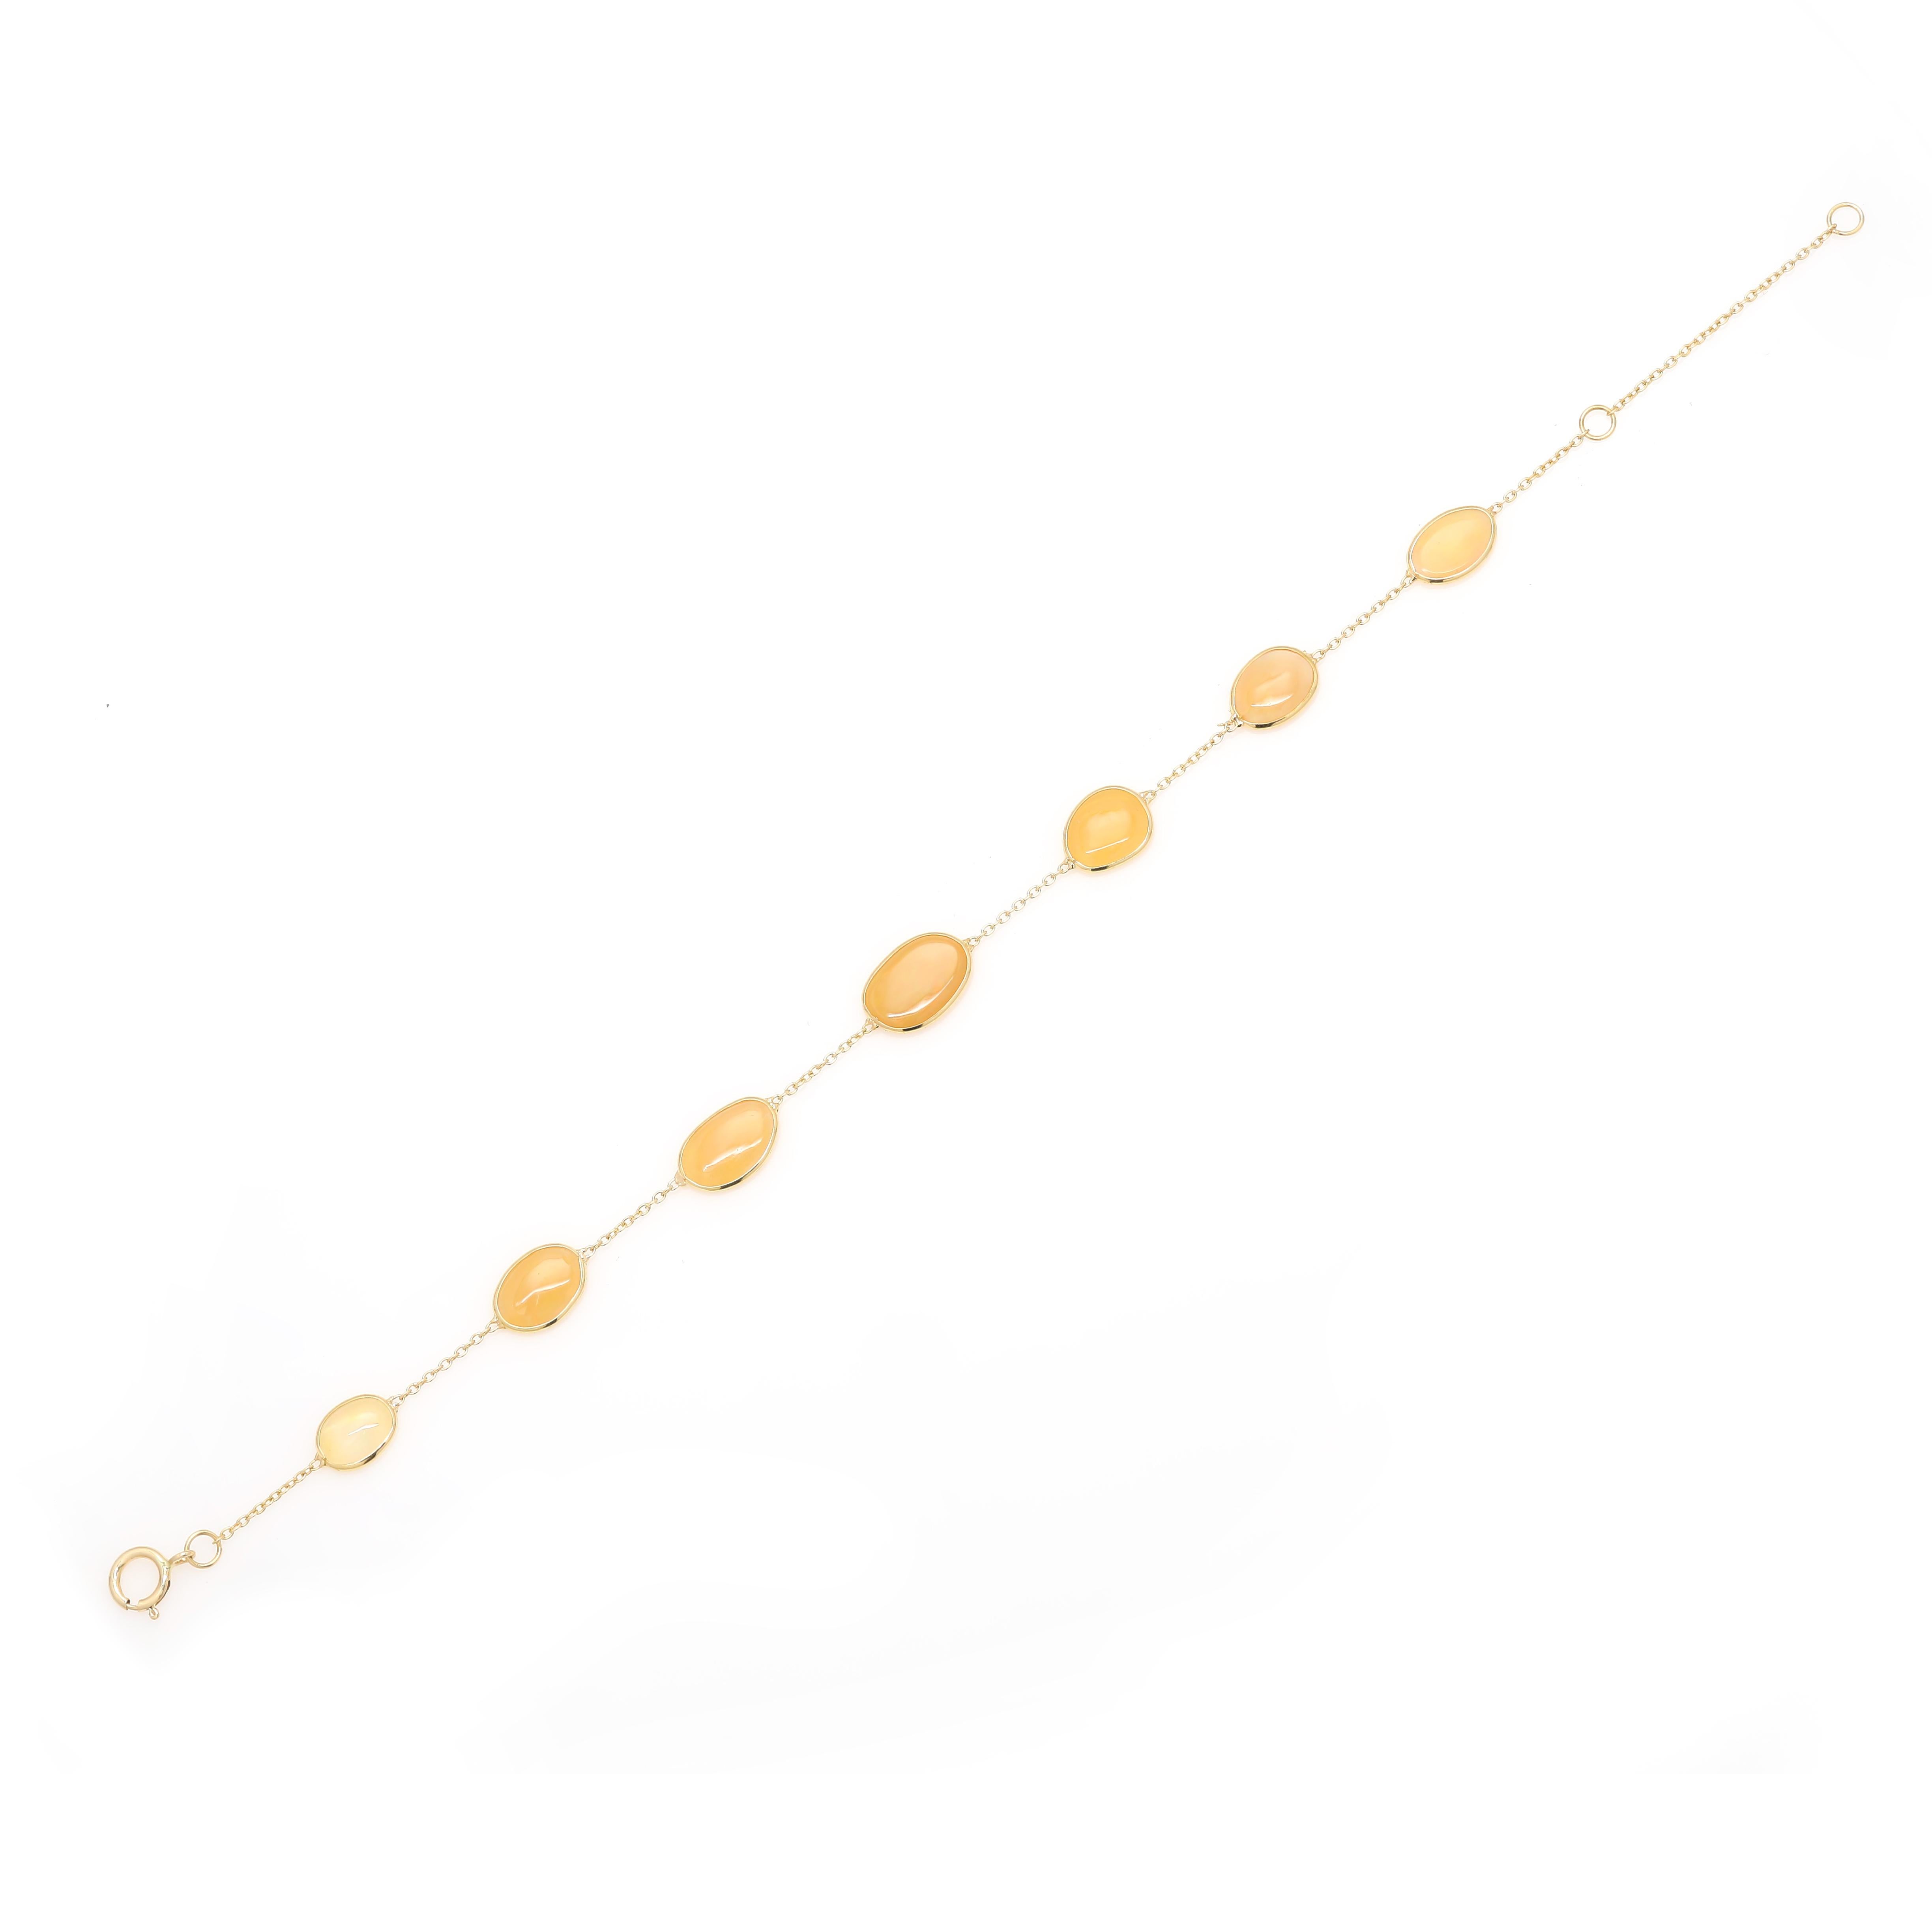 Dieses wunderschöne Opal-Station-Kettenarmband aus 18 Karat Gold präsentiert 7 funkelnde, natürliche Opale mit einem Gewicht von 3,5 Karat. Es misst 6 Zoll in der Länge. 
Opal fördert Kreativität, Leidenschaft und Stärke.
Entworfen mit einem